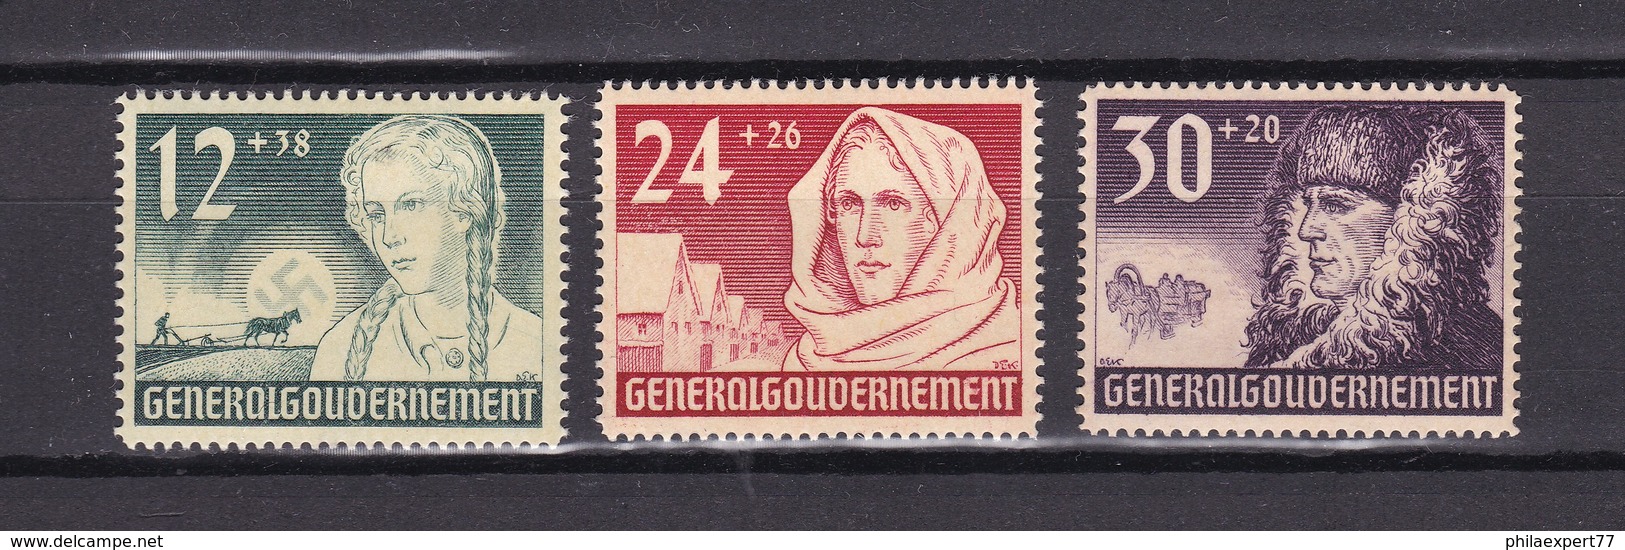 Generalgouvernement - 1940 - Michel Nr. 56/58 - Ungebr. - 11 Euro - Besetzungen 1938-45